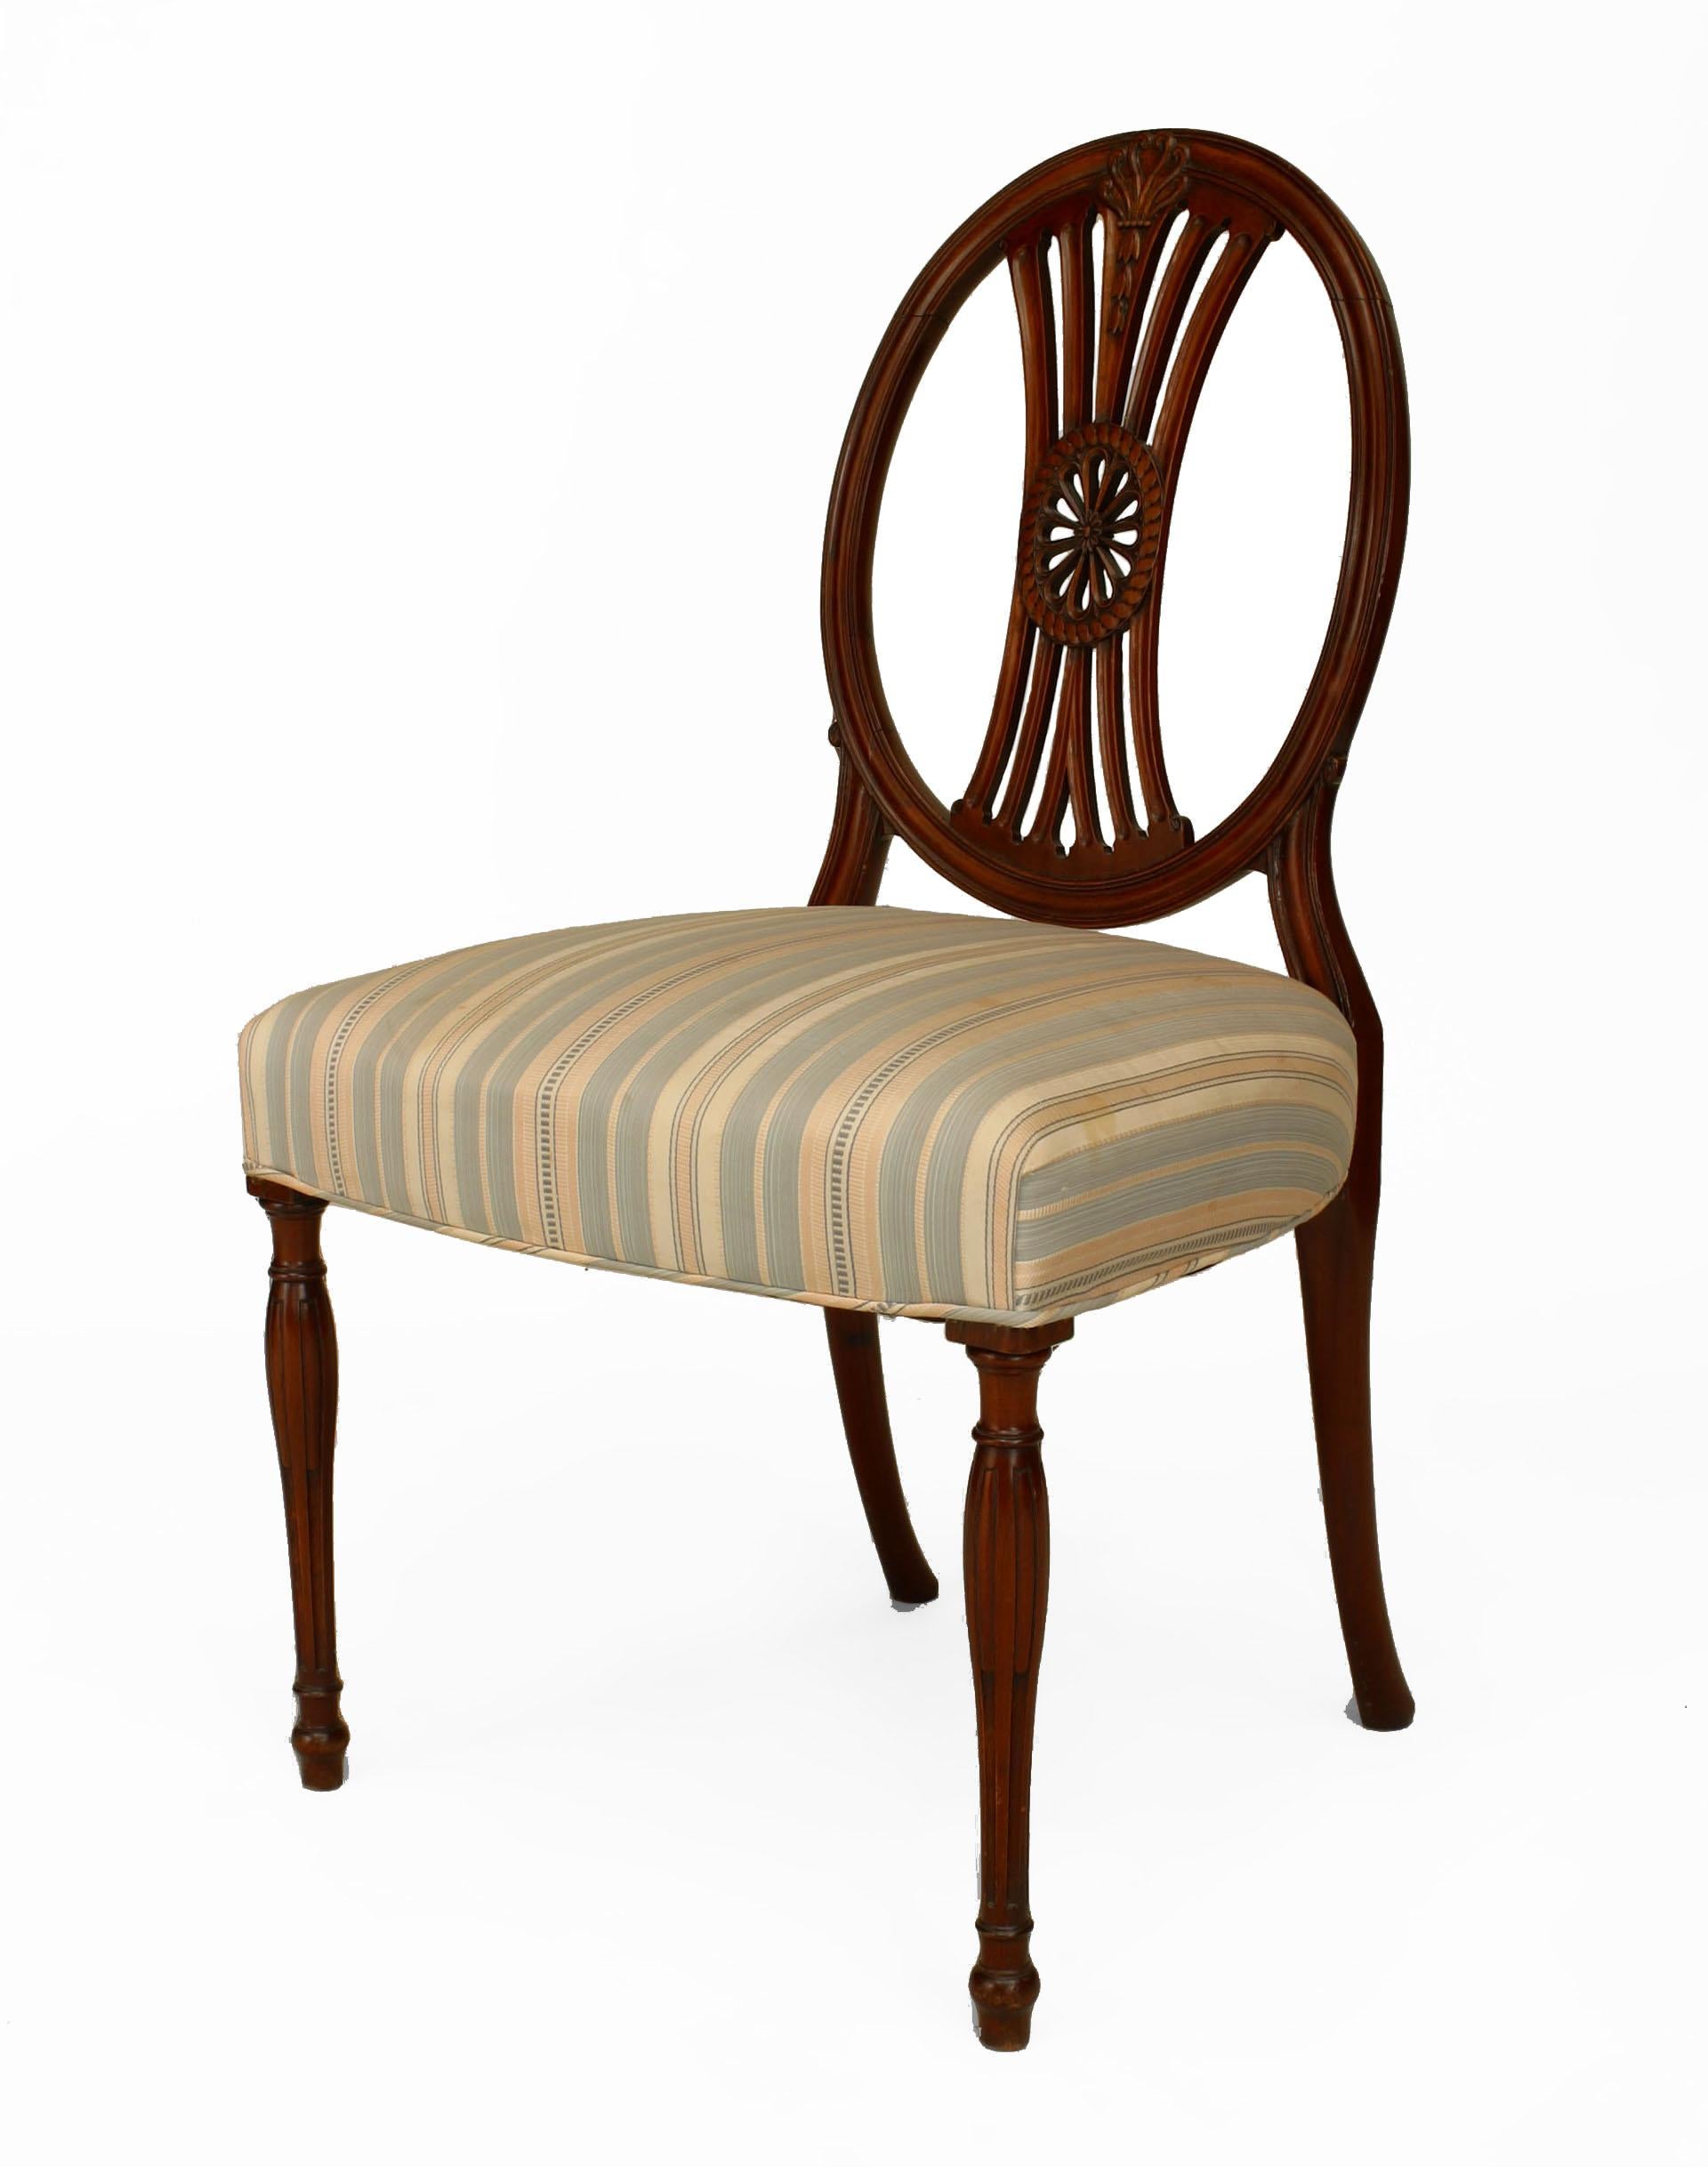 Ensemble de 7 chaises en acajou de style Sheraton anglais (20ème siècle) avec un dossier ouvert ovale avec un médaillon central sculpté et des pieds fuselés cannelés. Côtés : 21½